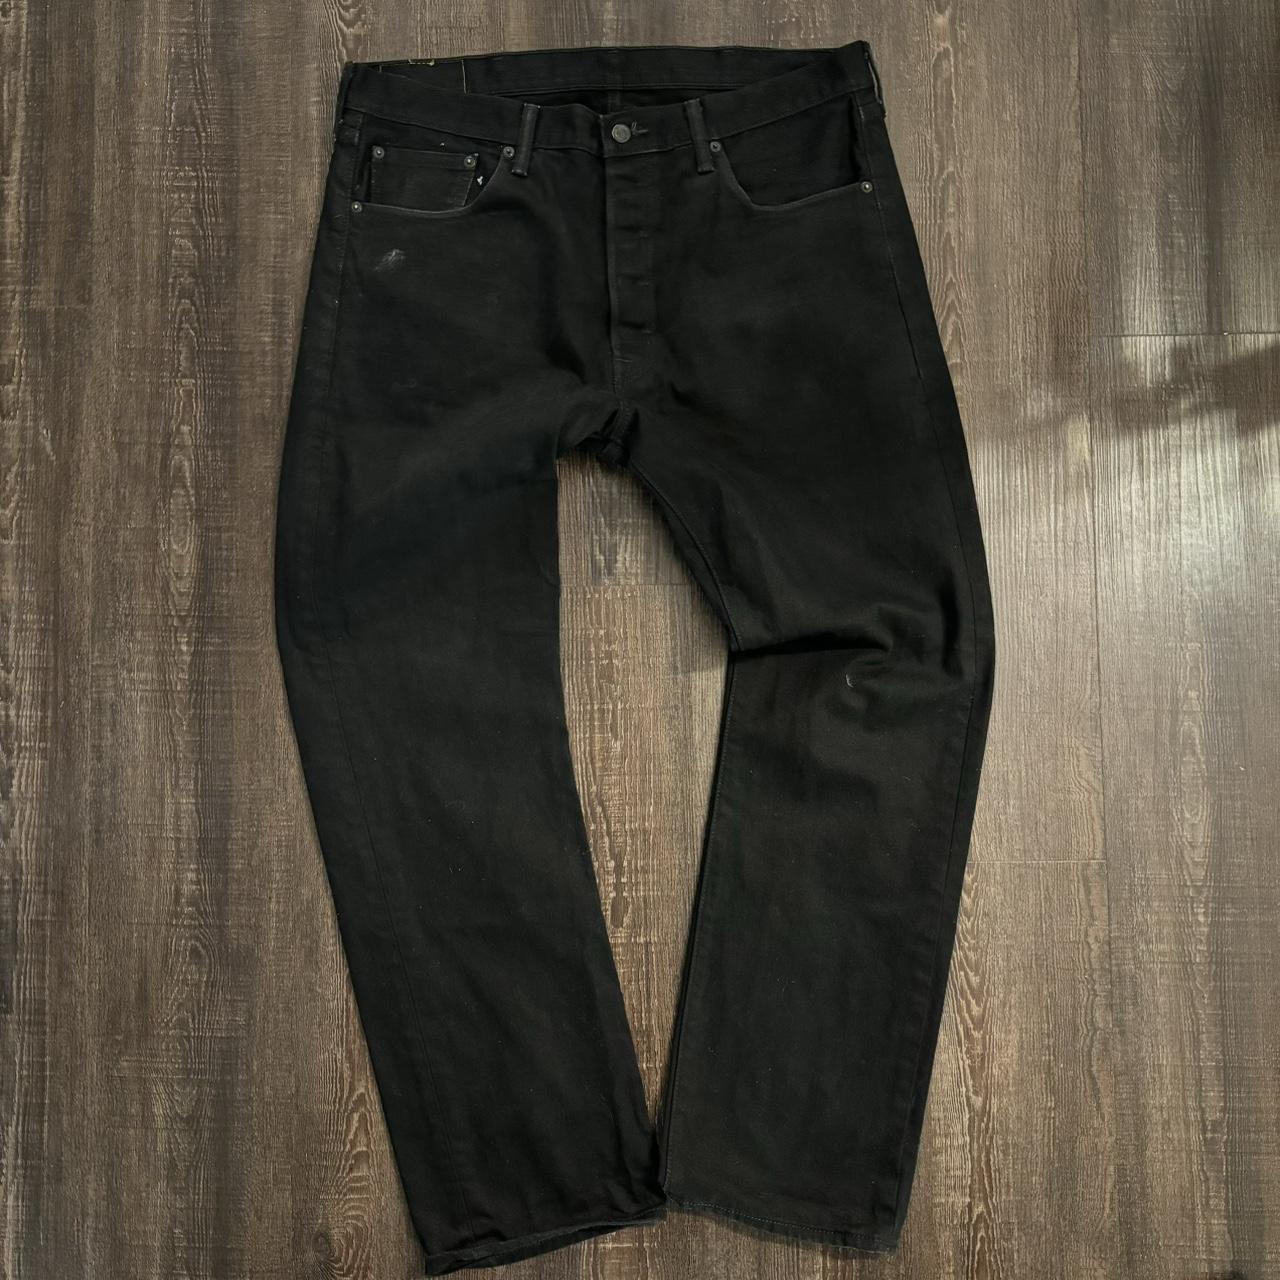 Black 501 Levi’s Jeans Size 38x32 #jeans #pants... - Depop